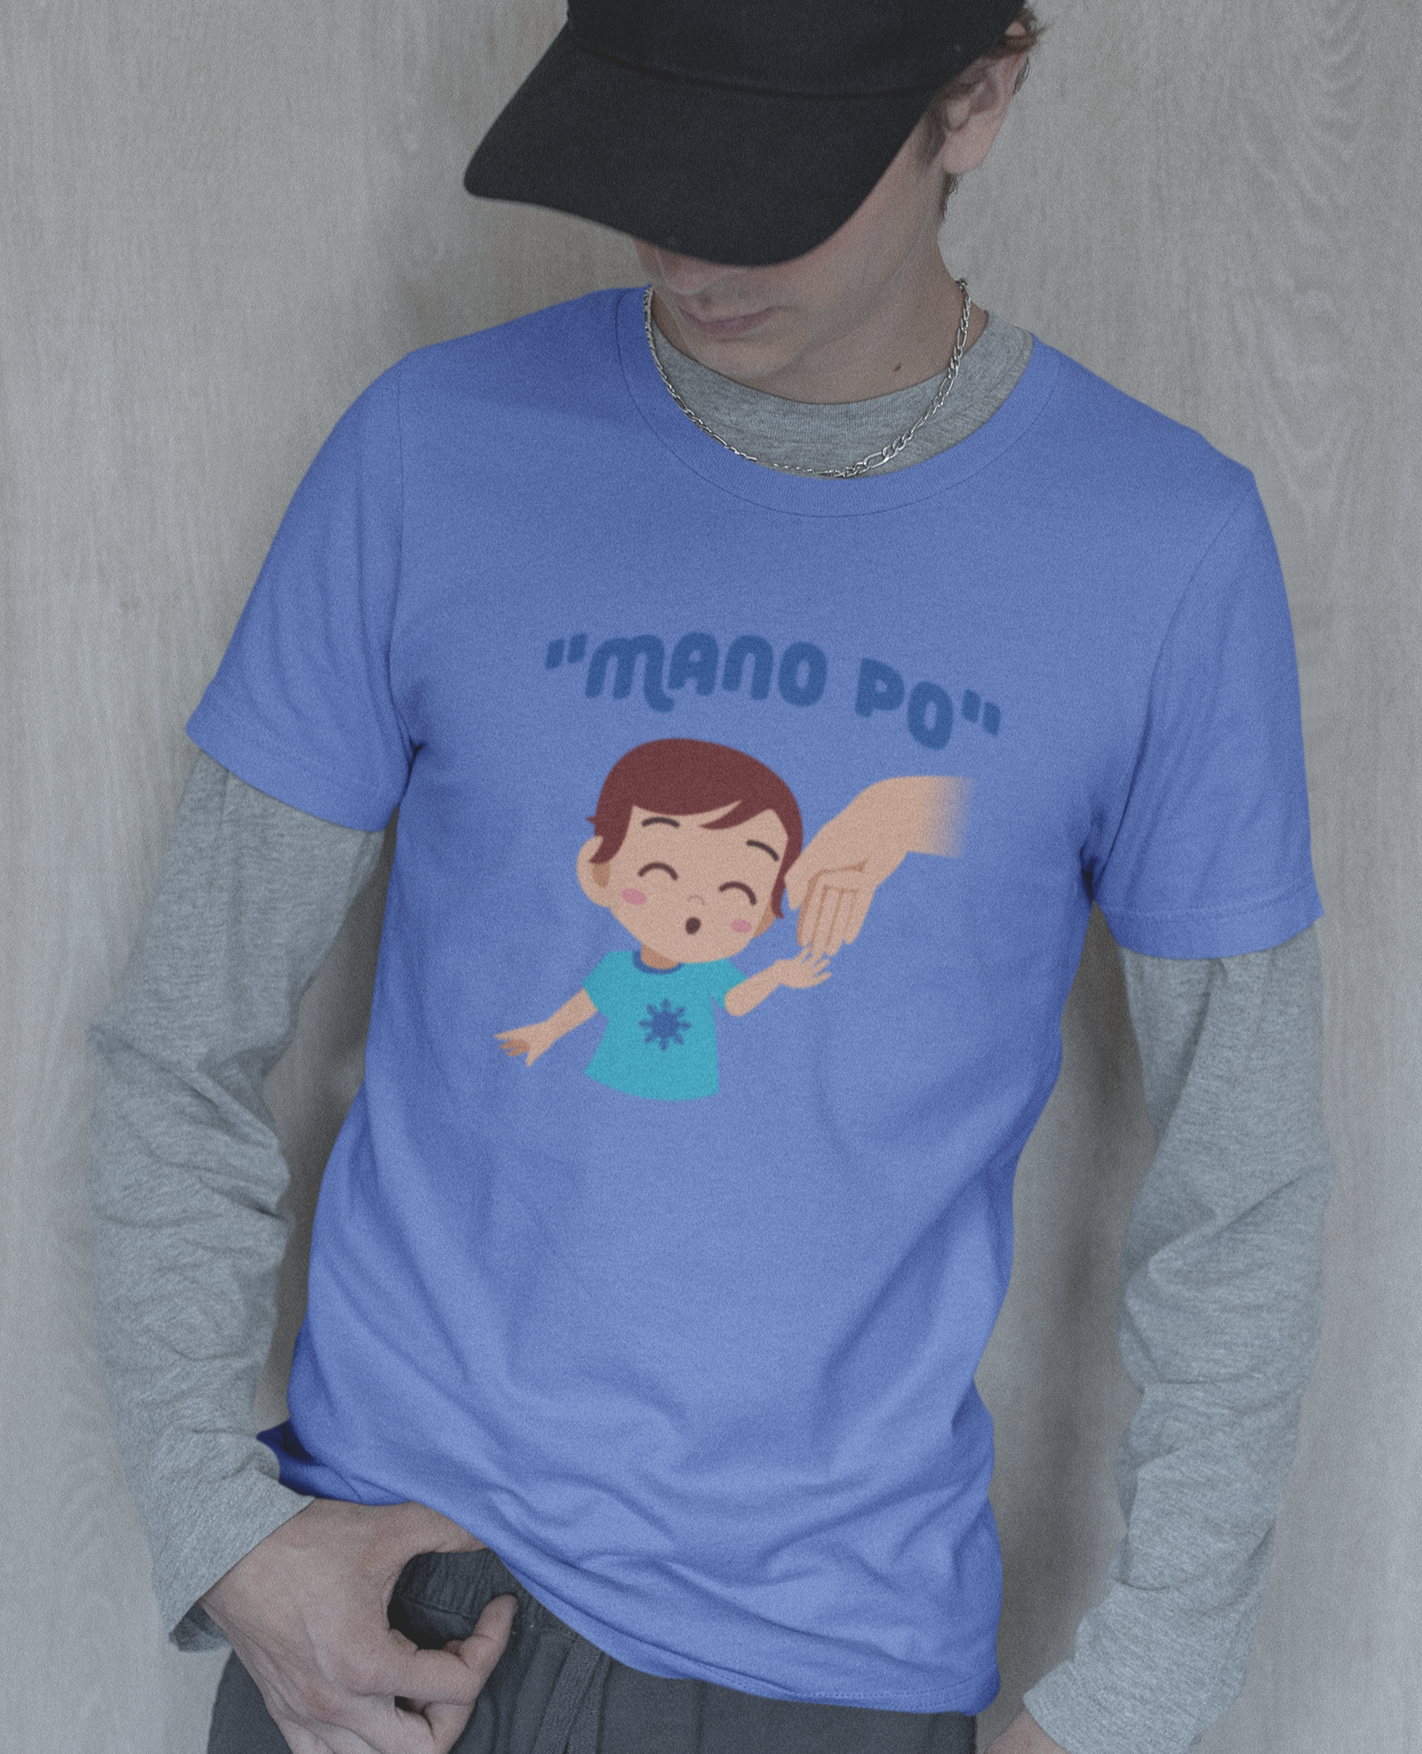 "MANO PO" Boy Youth/Kids Short Sleeve Tee